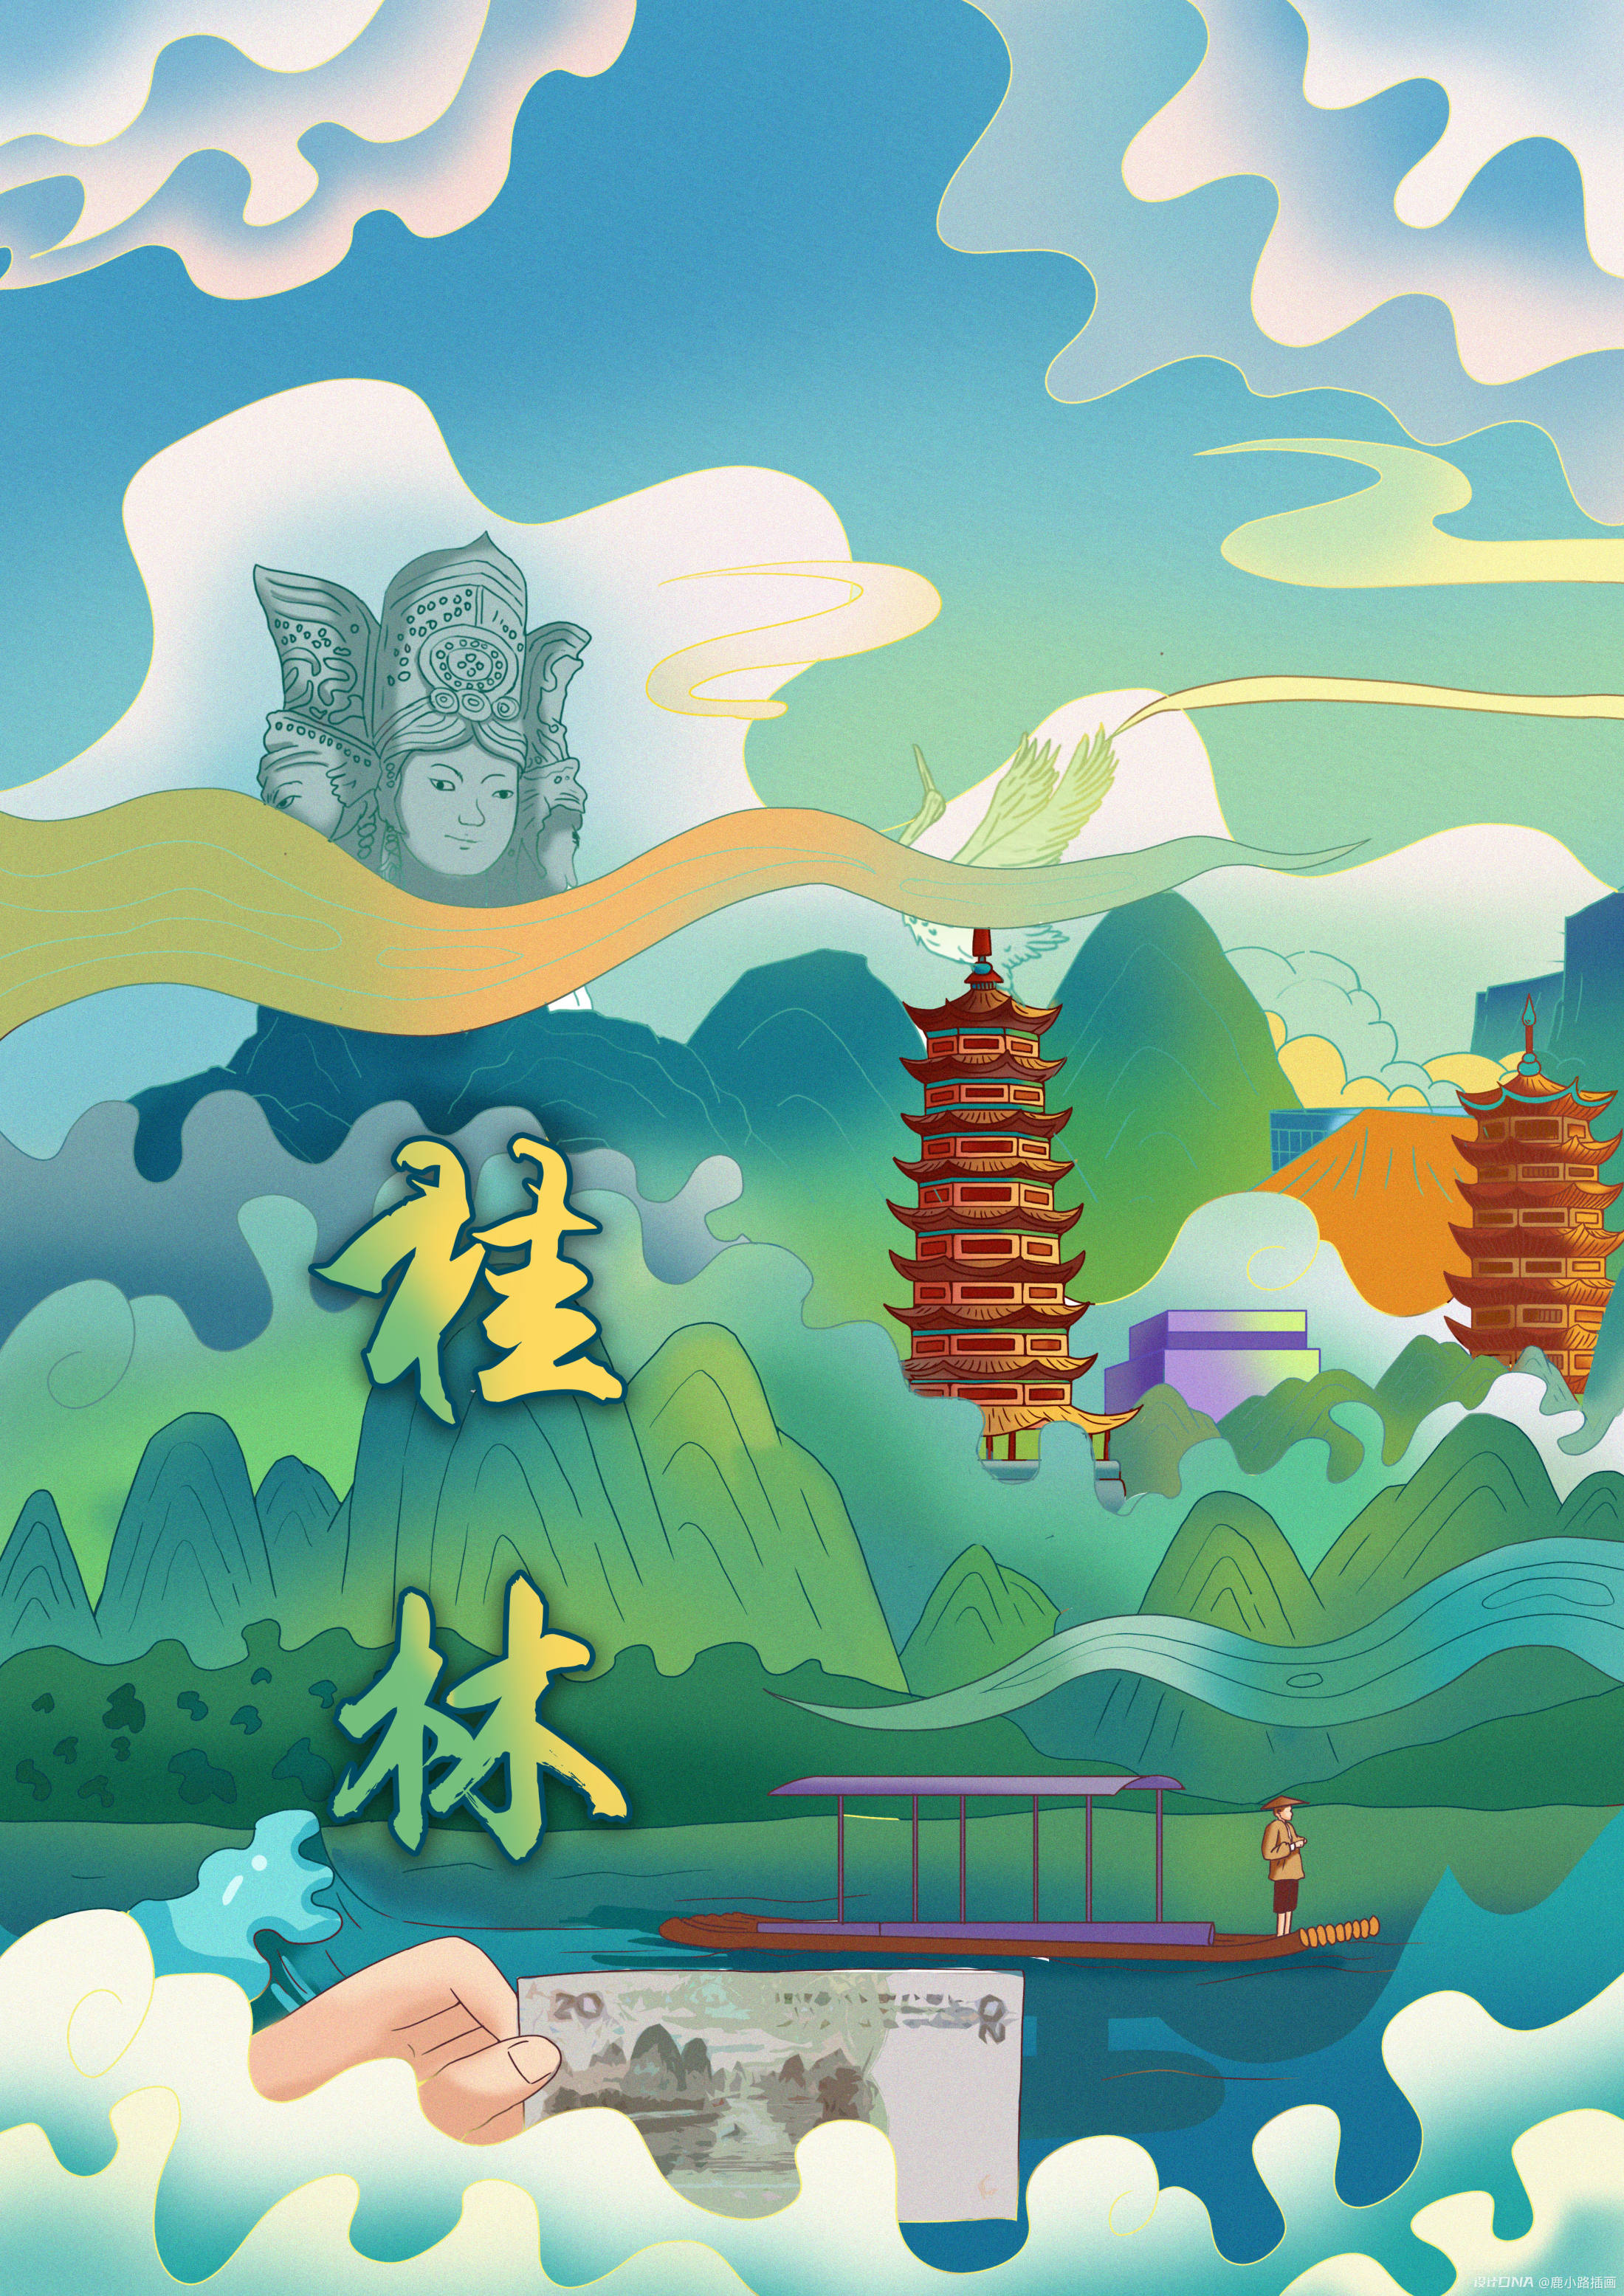 【寻美桂林】在最美山水间感受艺术——桂林艺术研学 - 童画森林创新美术教育